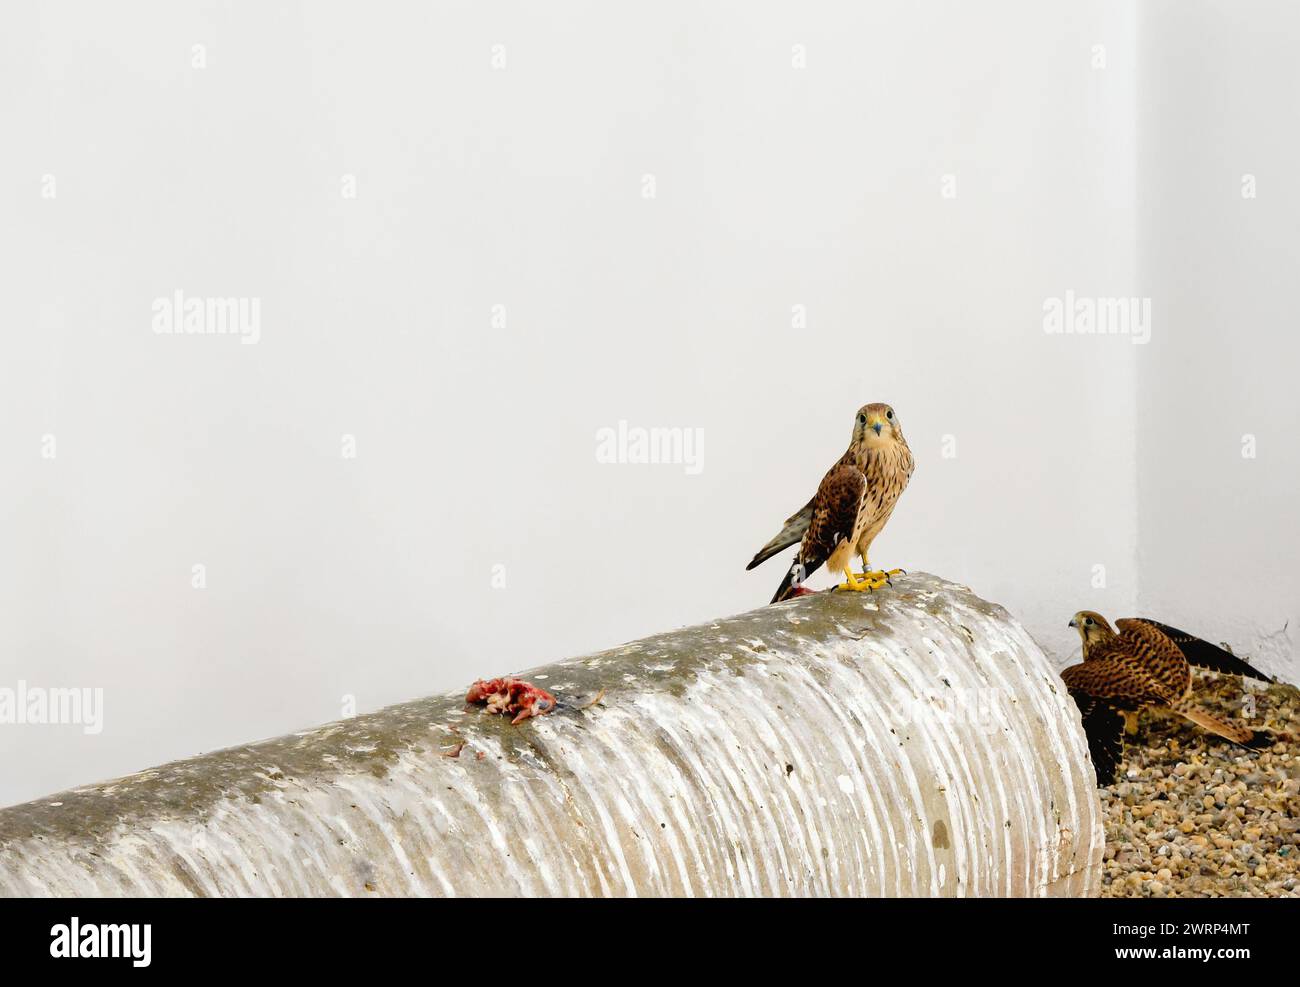 Kestrel sur un tube métallique entre sa nourriture et un autre oiseau étalant ses ailes.. Falco tinnunculus Banque D'Images